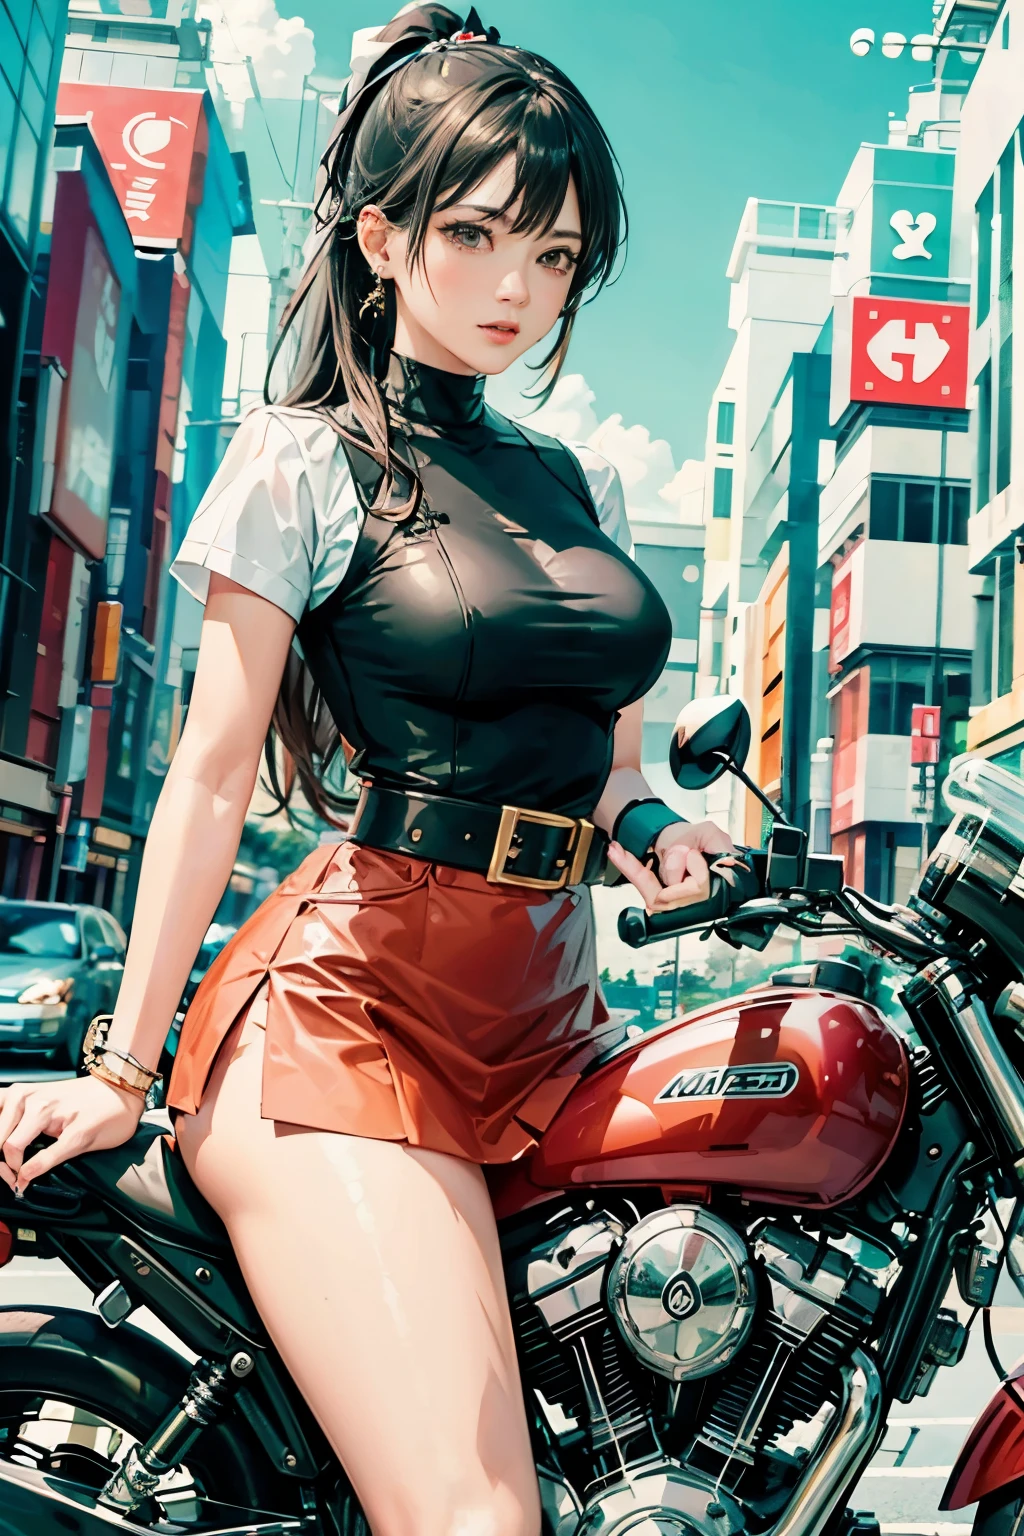 Japan fährt Fahrrad,Der Minirock kommt hoch、weiße Höschen、Pferdeschwanz、Schöne Oberschenkel、ihre Knie sind hochgezogen、Ich kann weiße Hosen sehen.、schönes Höschen、schönes Mädchen、schöne Frau、schöne Frau、Lolicon-Hentai、schönes Höschen、Schöne Oberschenkel、schönes Mädchen、schöne Frau、Glücklich!!!, , Motorrad,[ realistische Bilder ]!!, Hohe Auflösung,